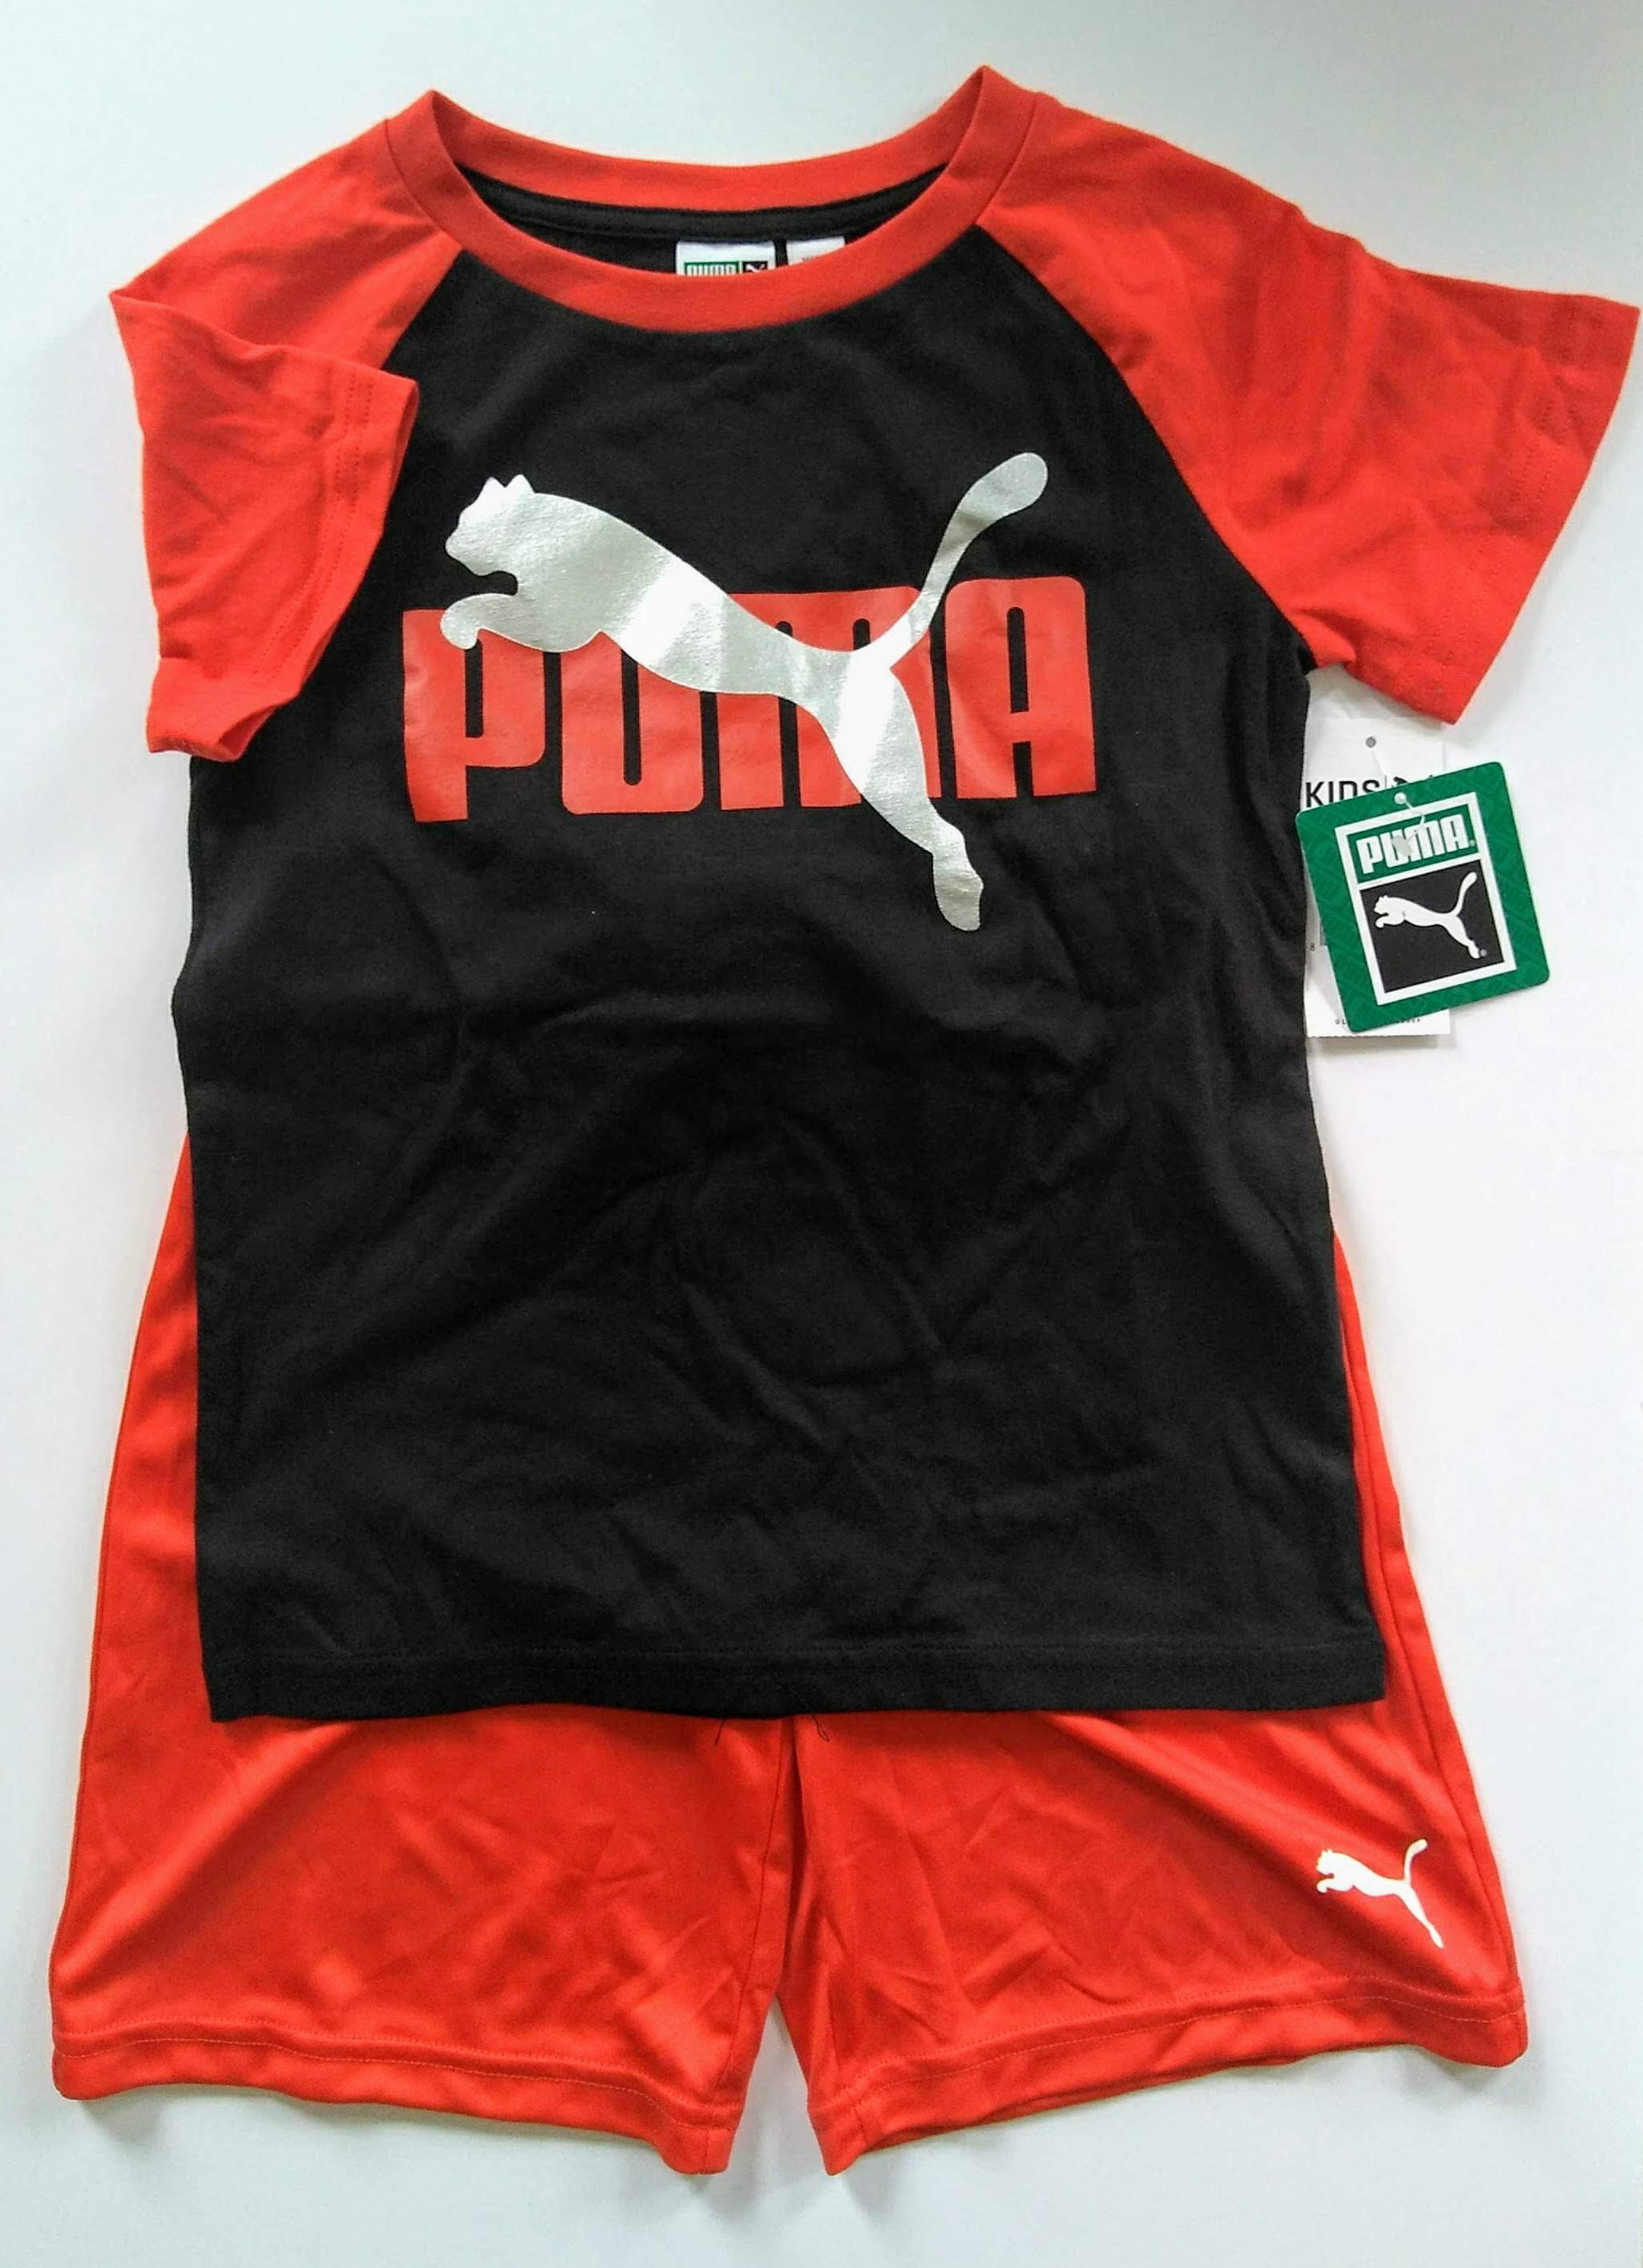 voordelig gehandicapt melk Puma Kids Athletic 2 Piece Set Short Sleeve T-Shirt & Shorts Size 5 -  Walmart.com